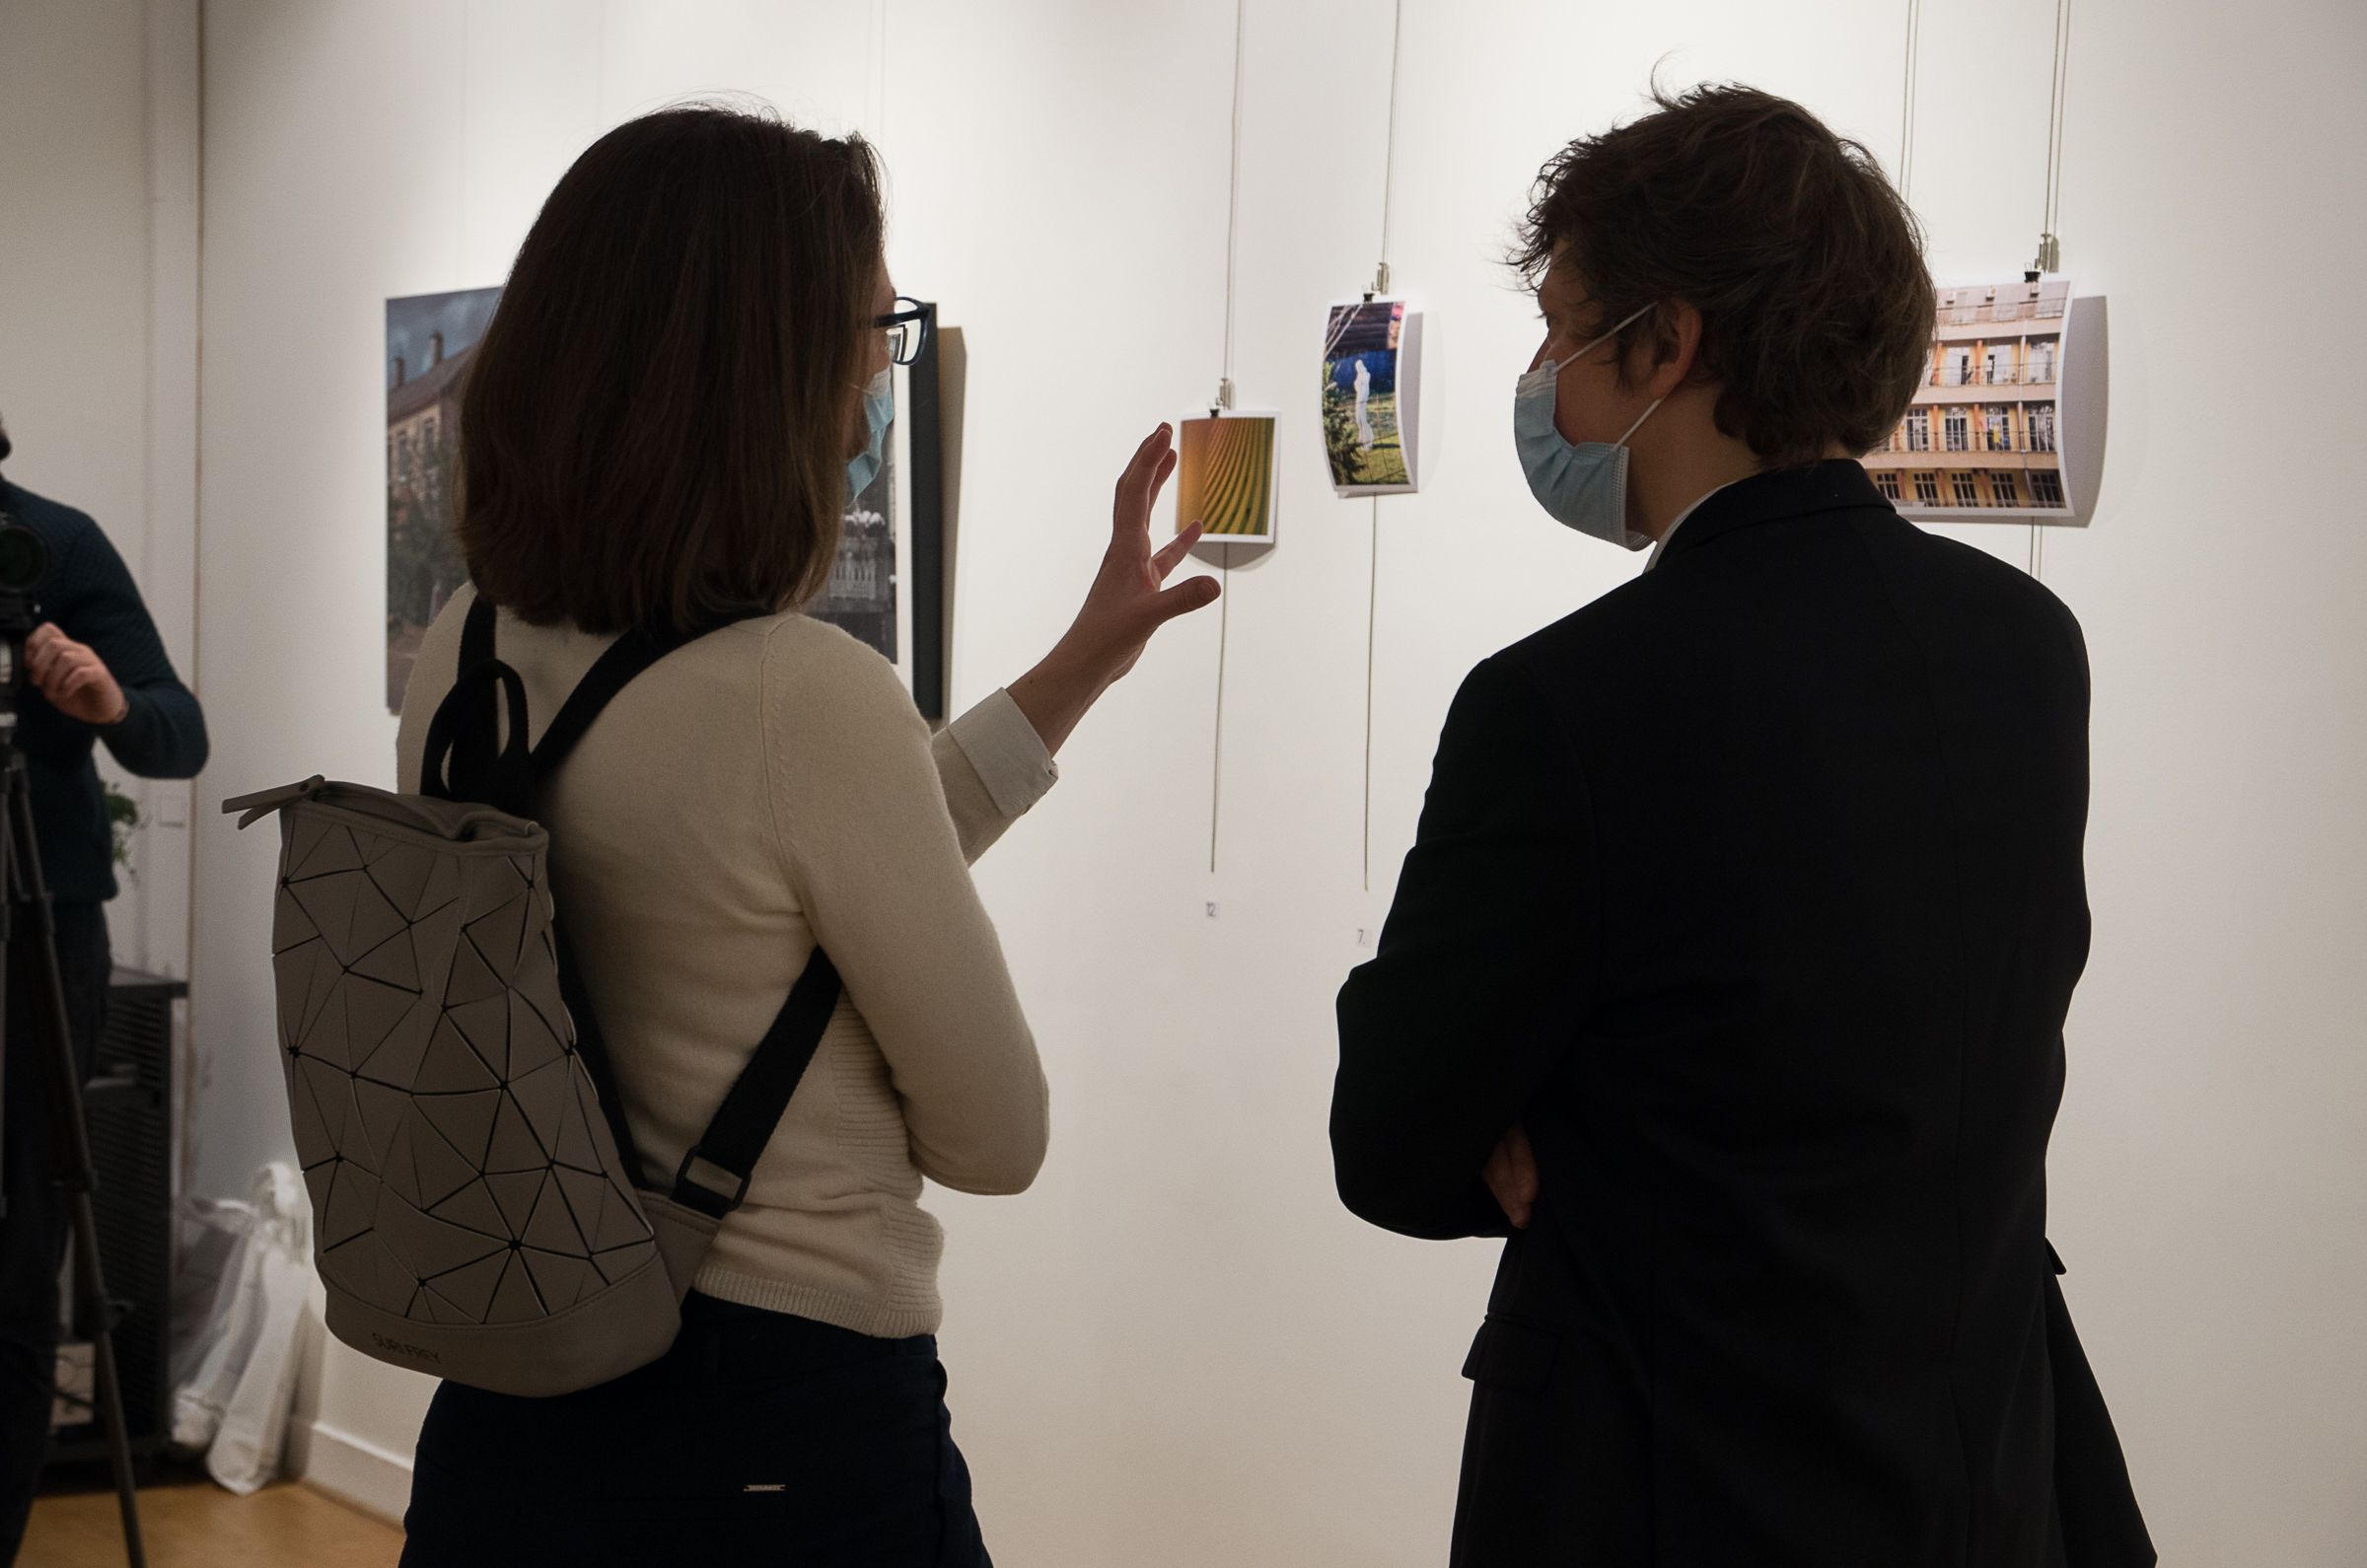 izložba u parizu, vide se dve osobe sa leđa koje razgovaraju dok gledaju u fotografije